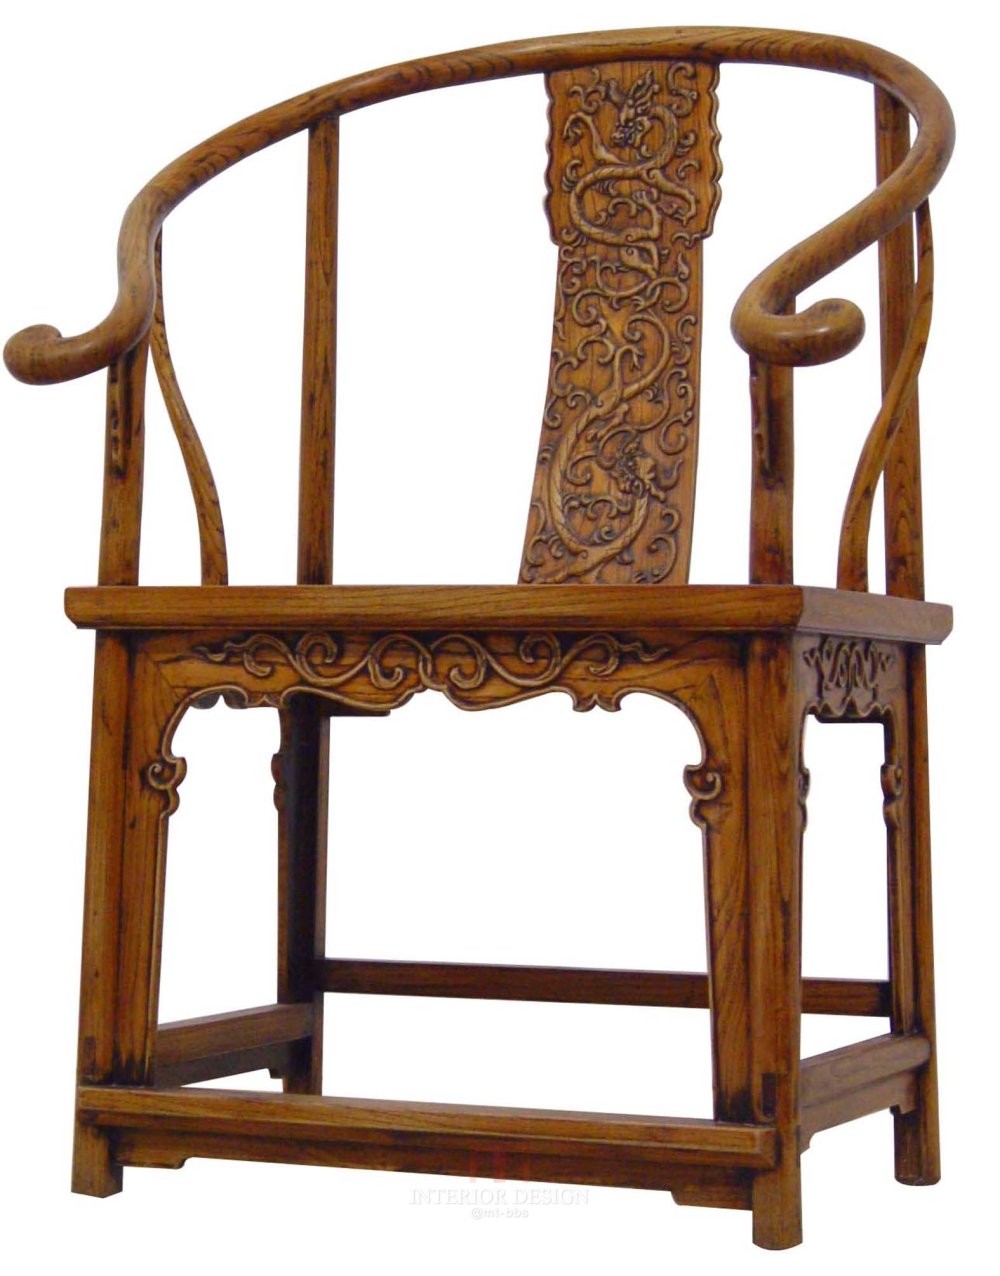 生活中不可或缺的家具-古典椅子_DSC04567.JPG